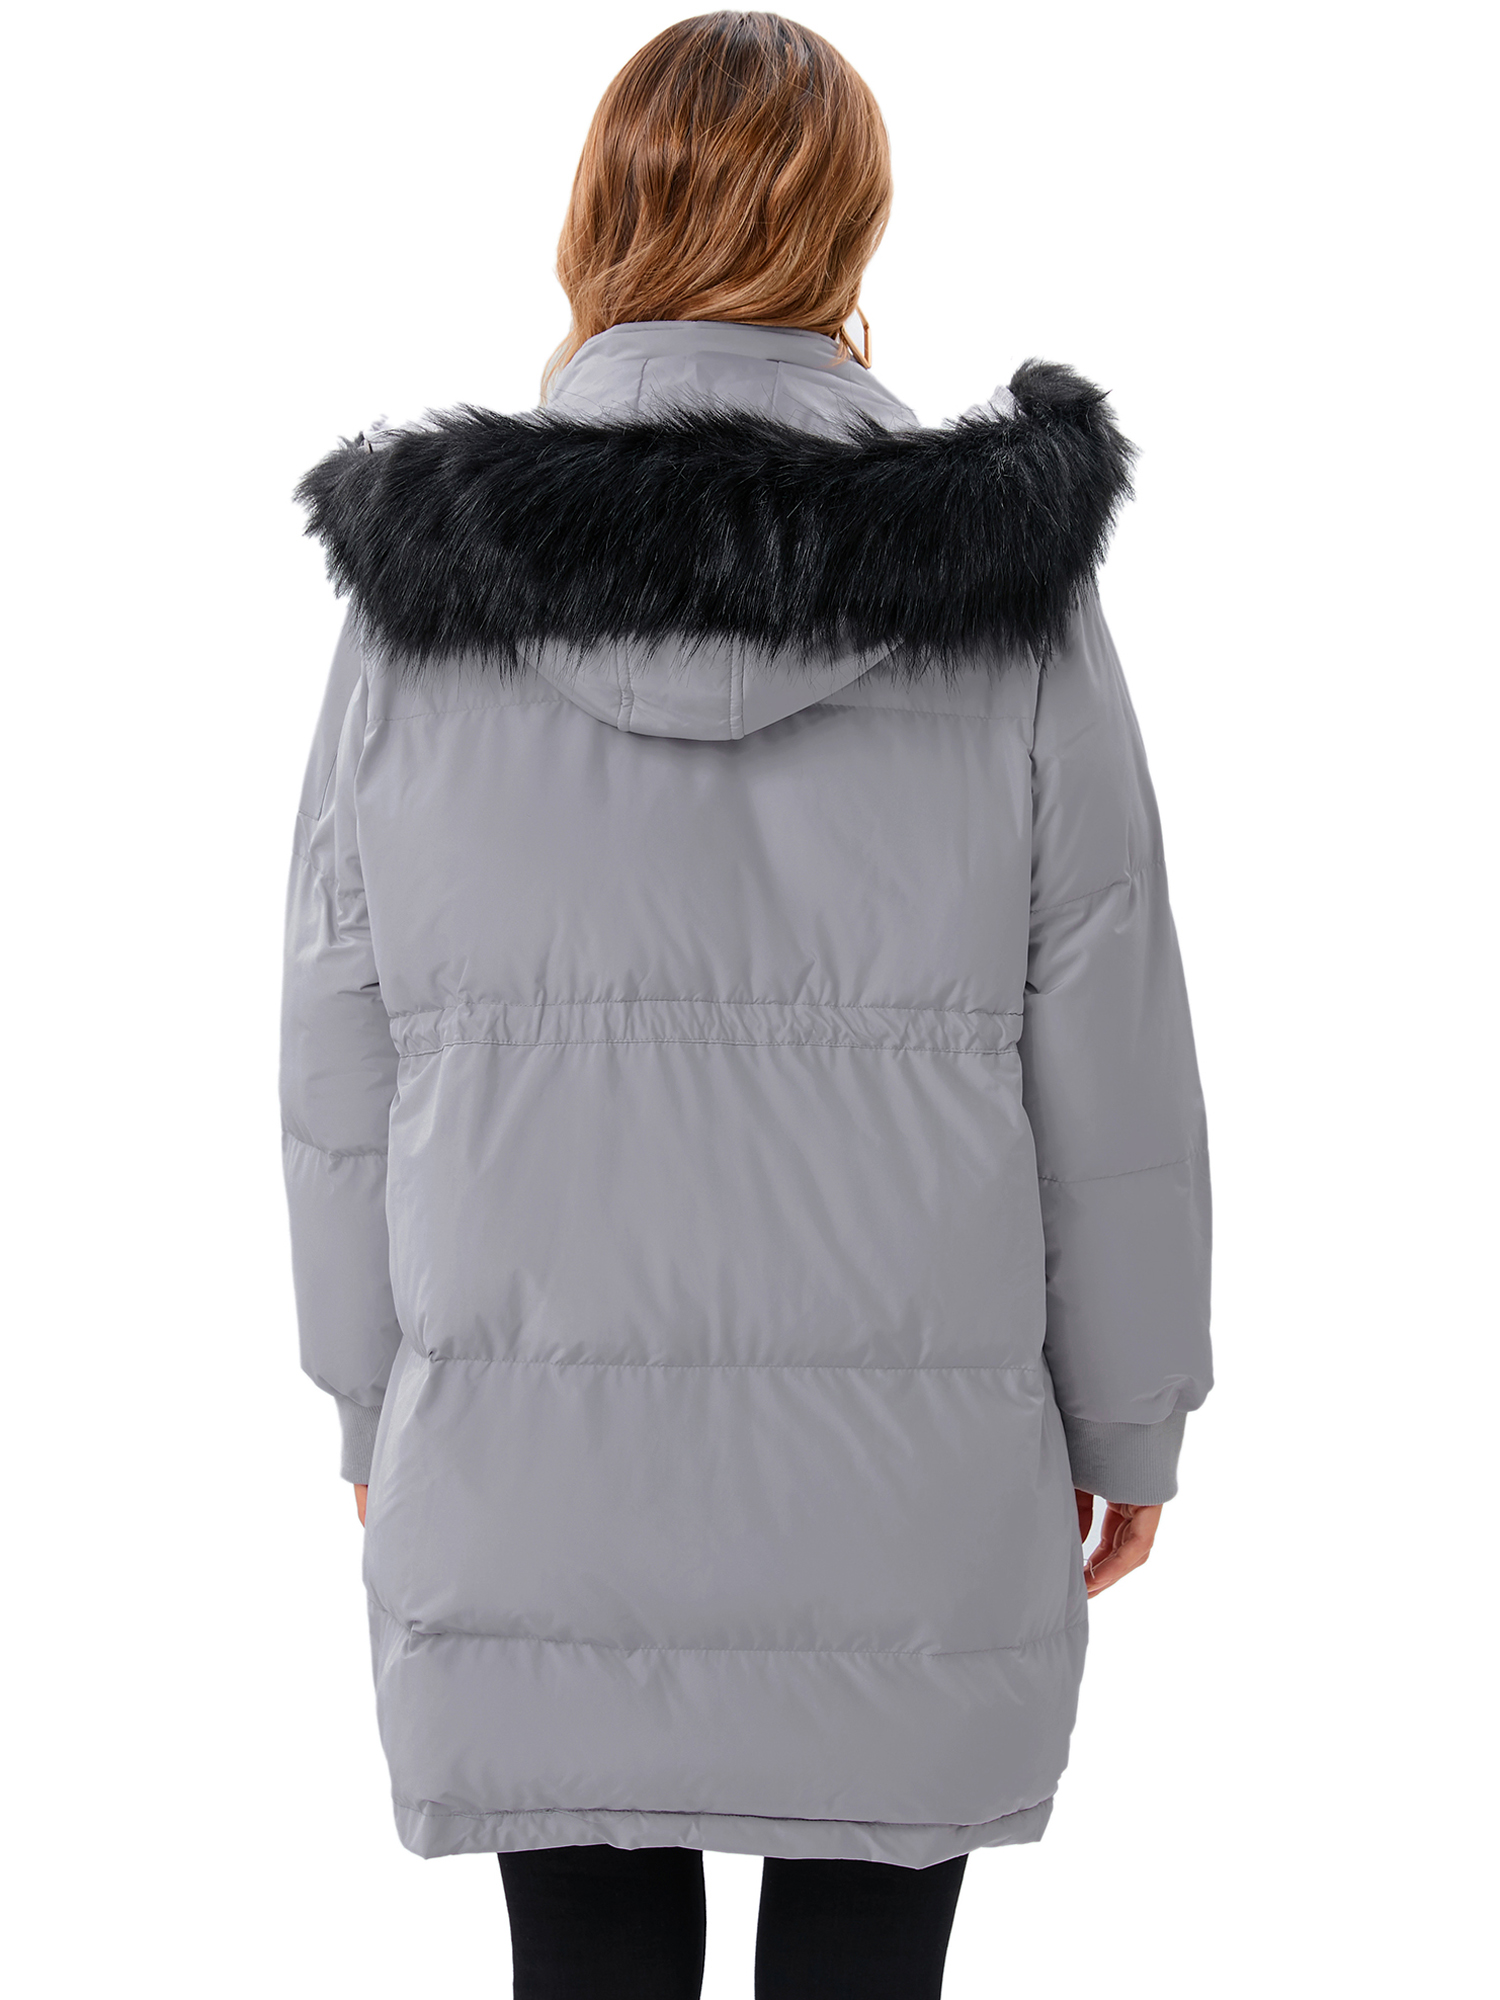 LELINTA Women's Long Winter Warm Puffer Coat Vegan Down Jacket Waterproof Rain Zip Parka, Camouflage - image 4 of 7